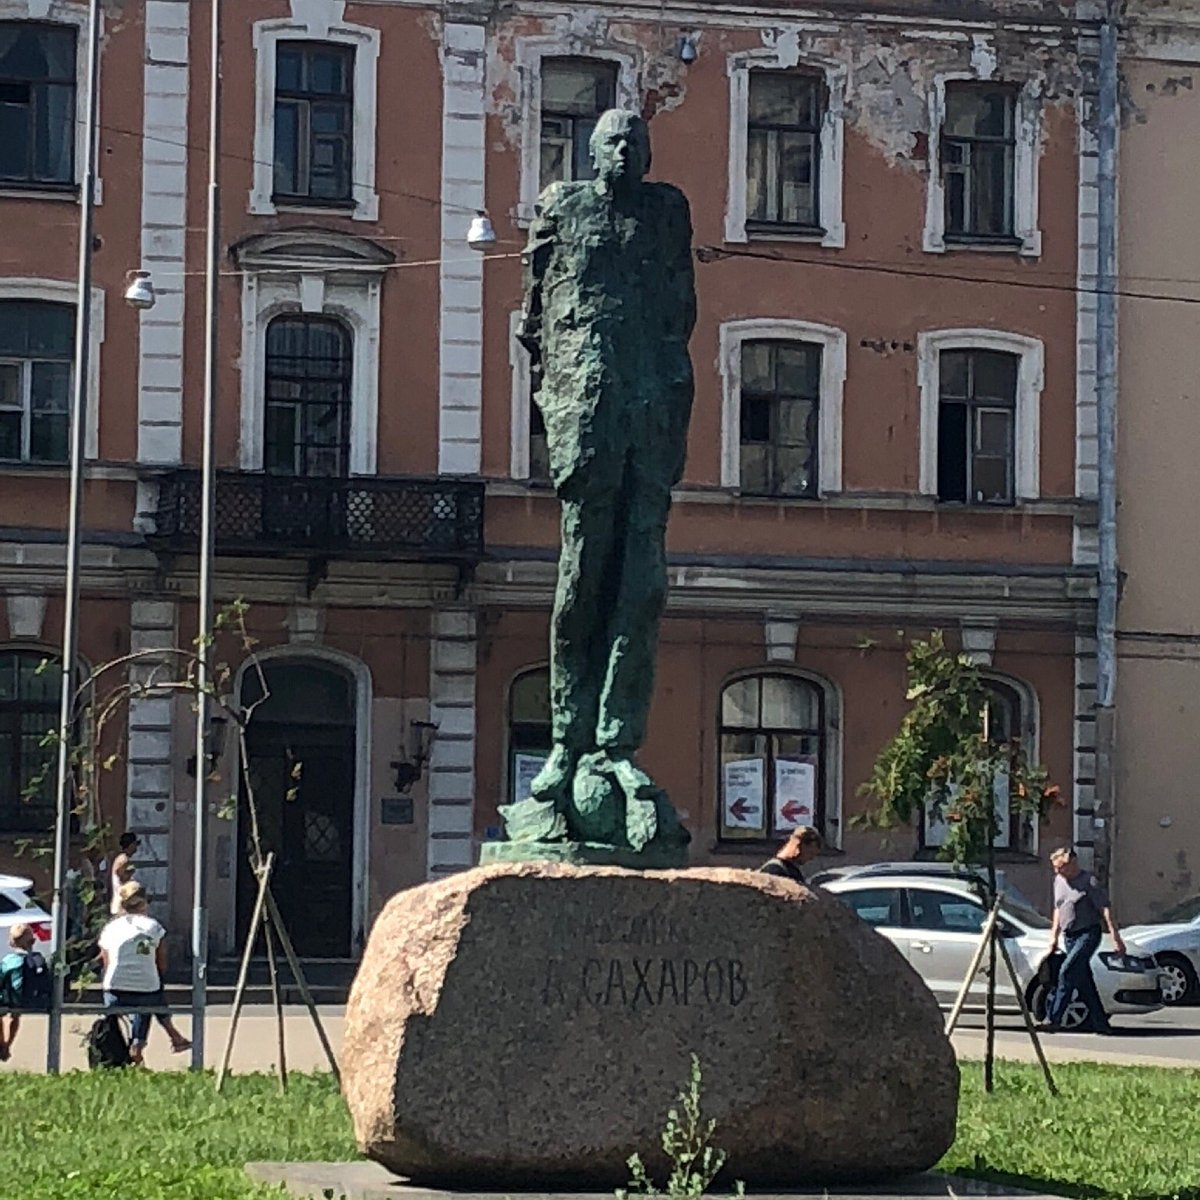 Памятник сахарову в санкт петербурге фото